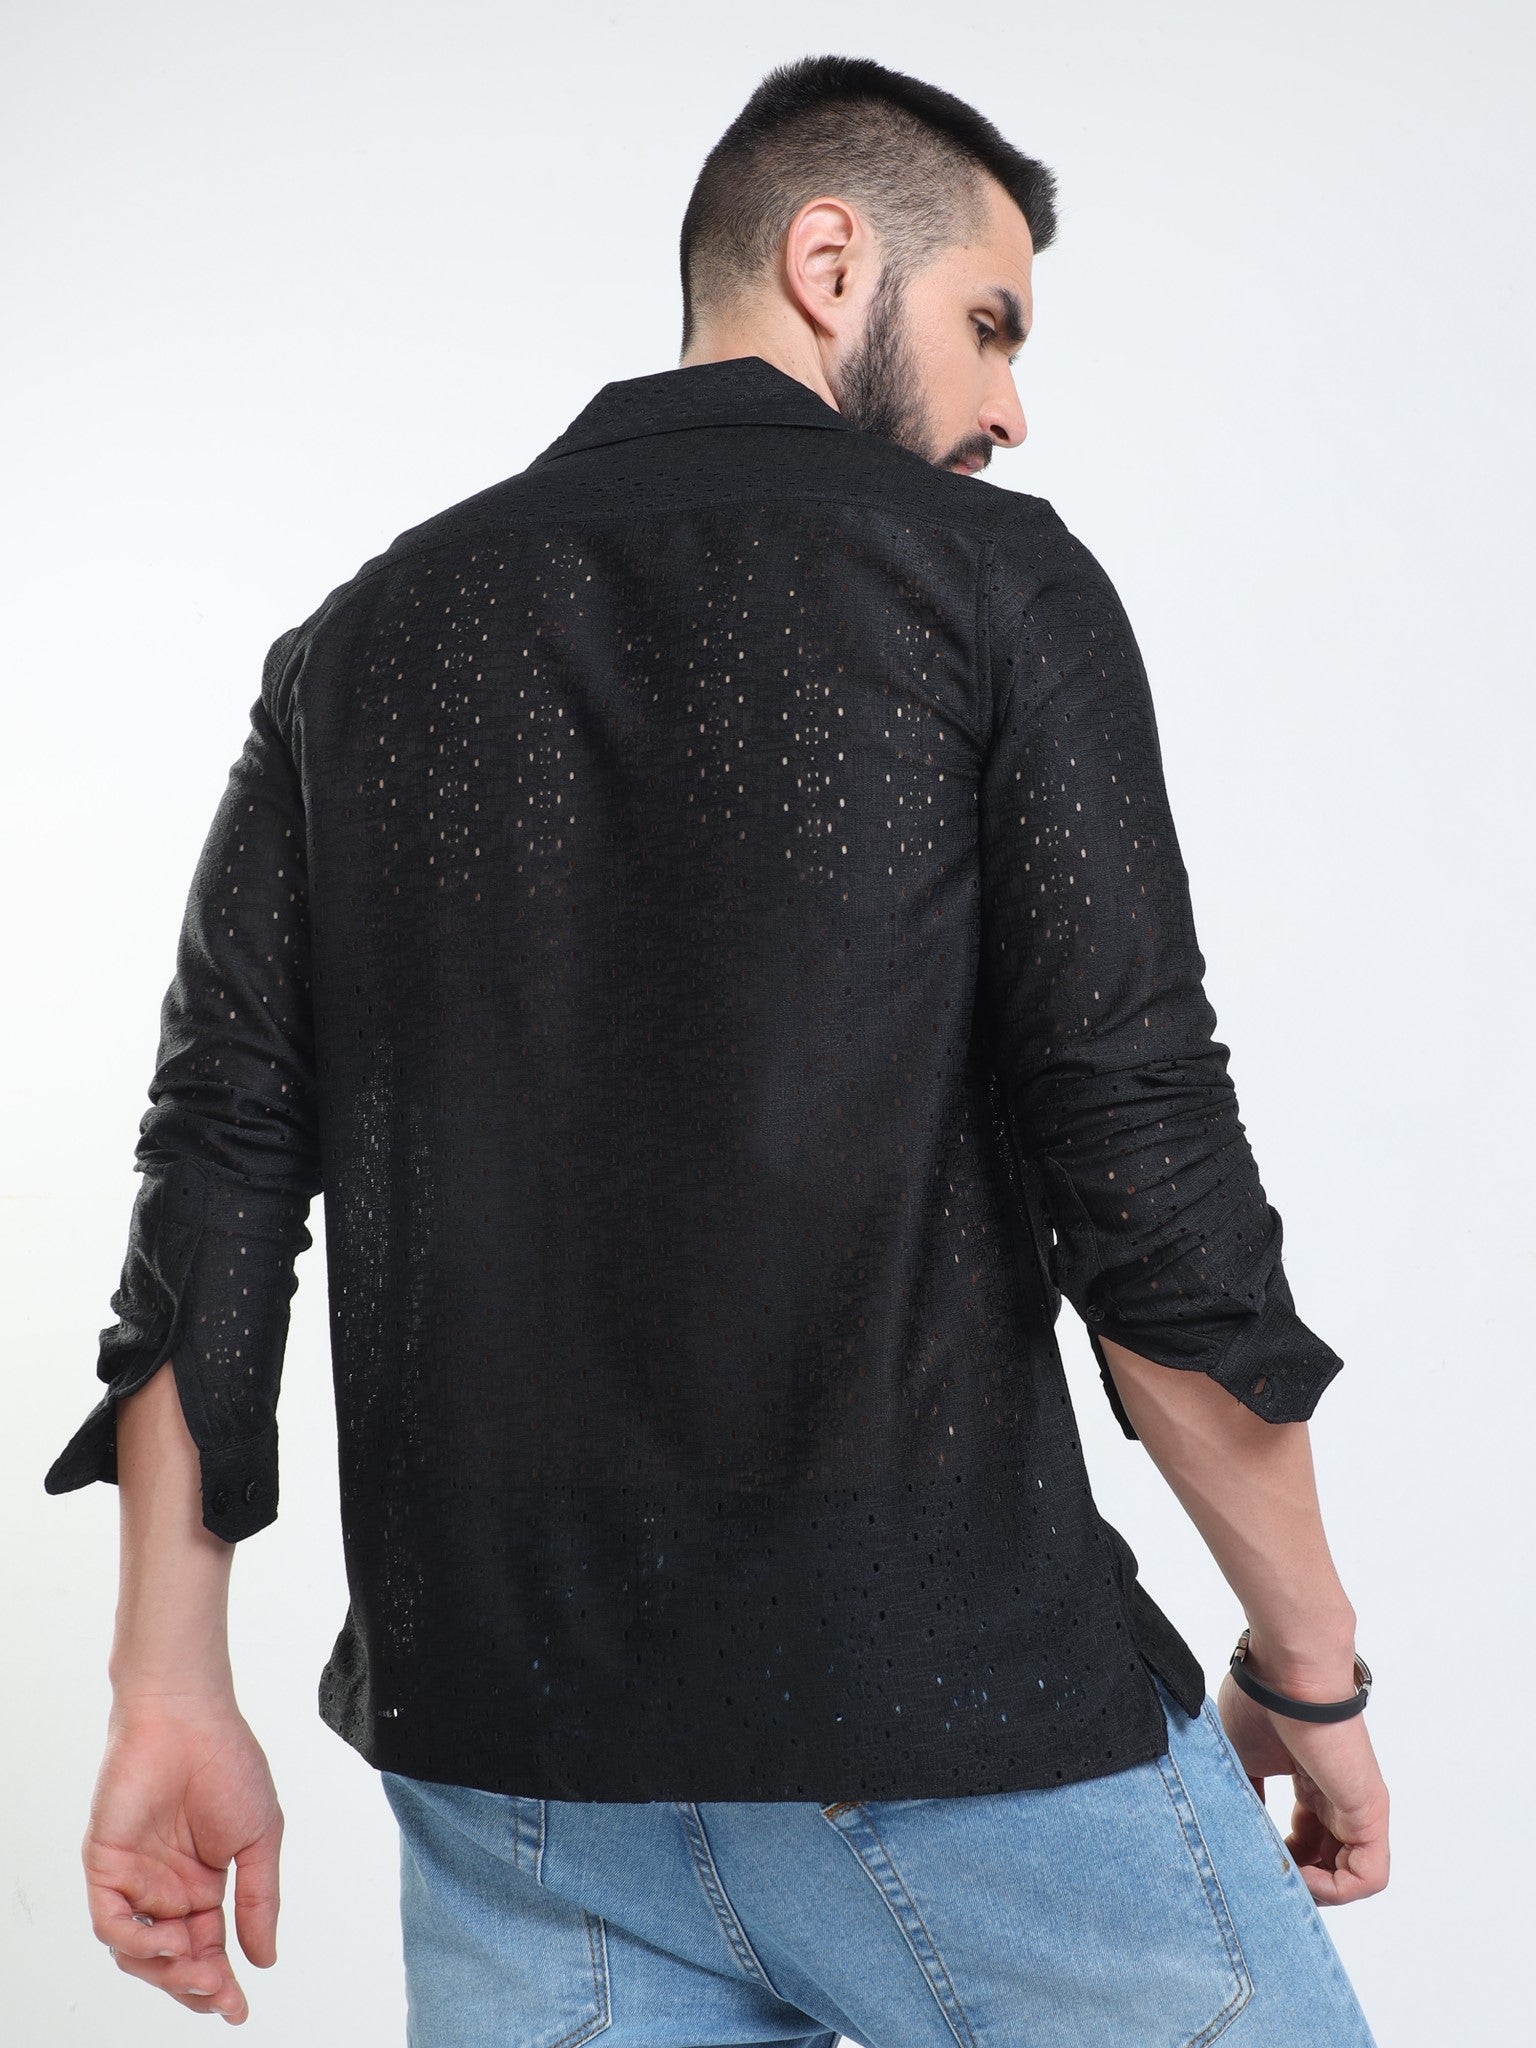 Eyelet Crochet Black Shirt for Men